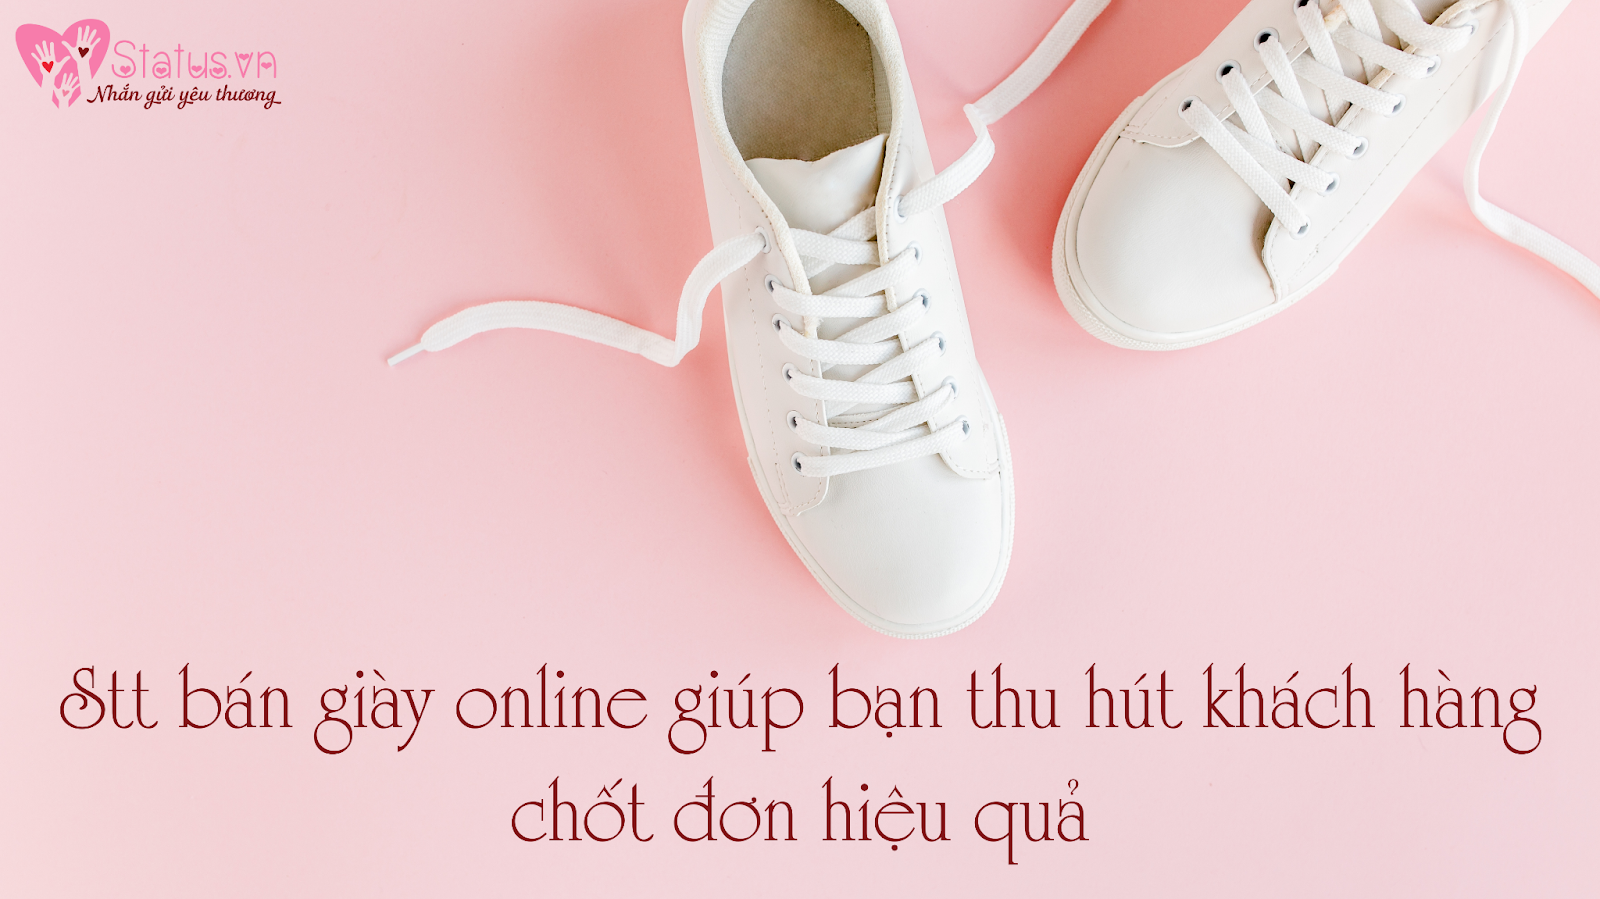 Stt bán giày online hấp dẫn và ấn tượng là chiến lược quan trọng